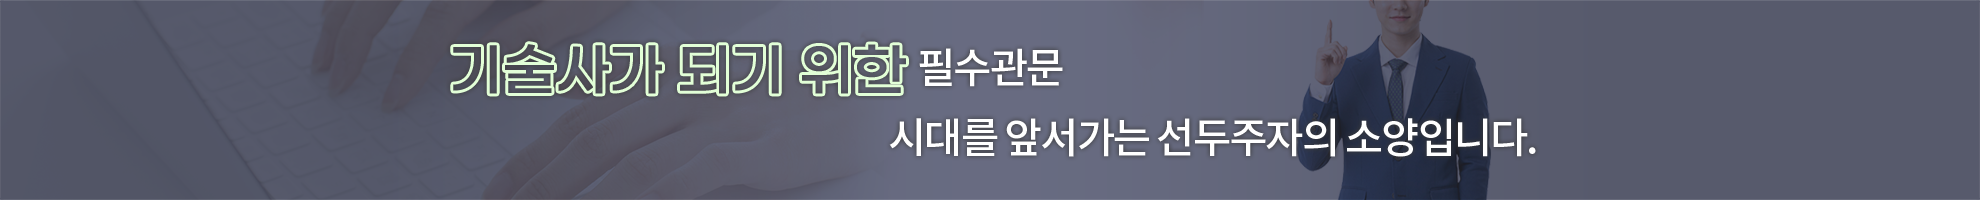 004-신재생 합격의맥.png